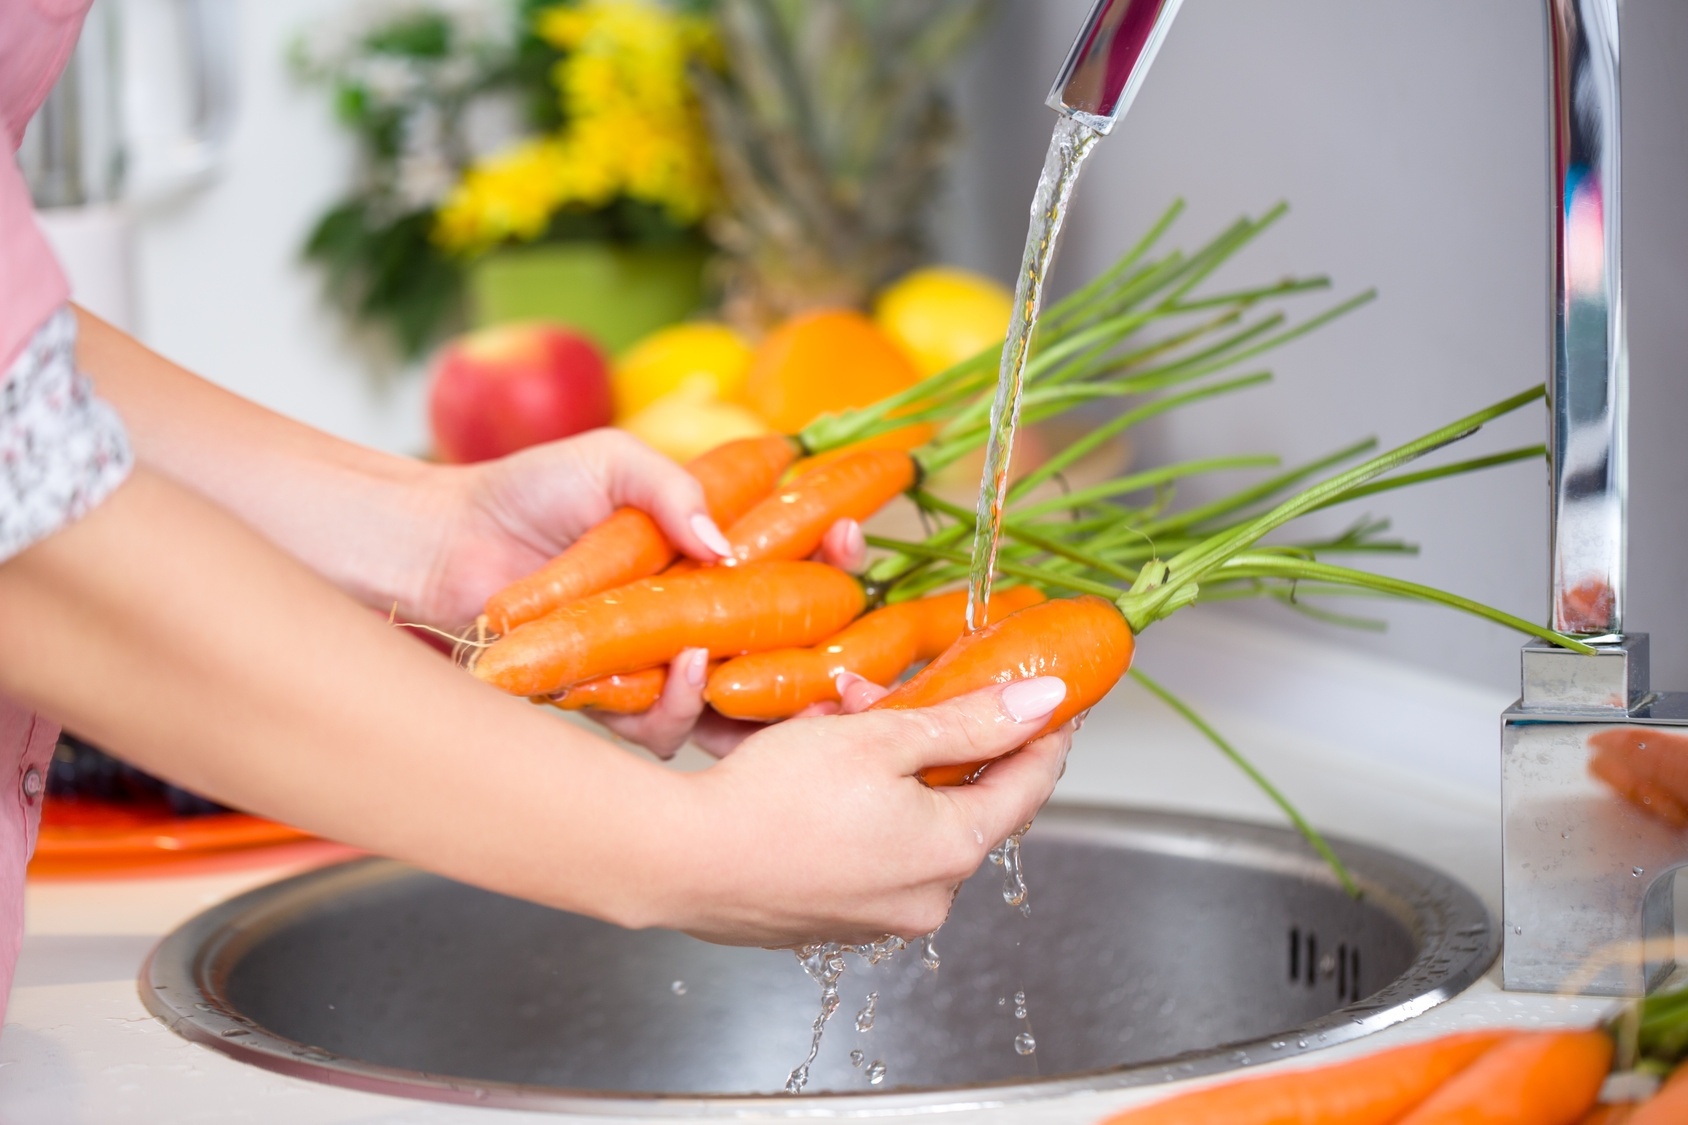 El betacaroteno de la zanahoria es un nutriente soluble en grasa que mantiene la salud de la visión, también fortalece el sistema inmunológico (Europa Press)